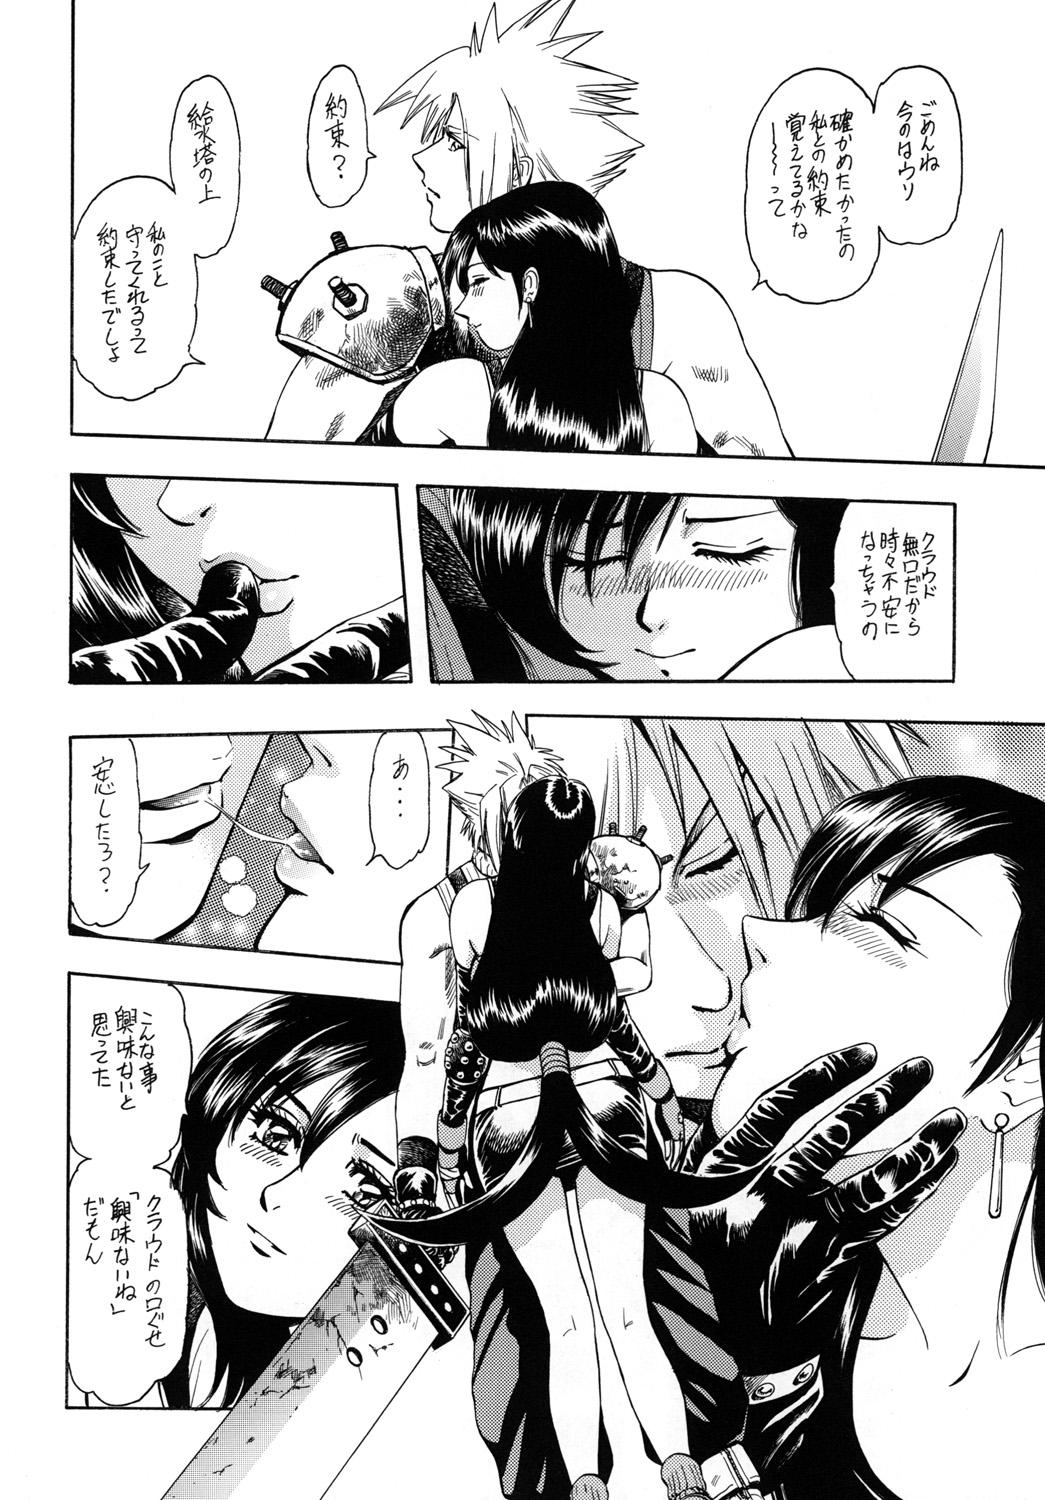 No Condom Tenshi no Kuchibiru Megami no Hanazono - Dead or alive Final fantasy vii Gundam Mobile suit gundam Rumble roses Athletic - Page 7